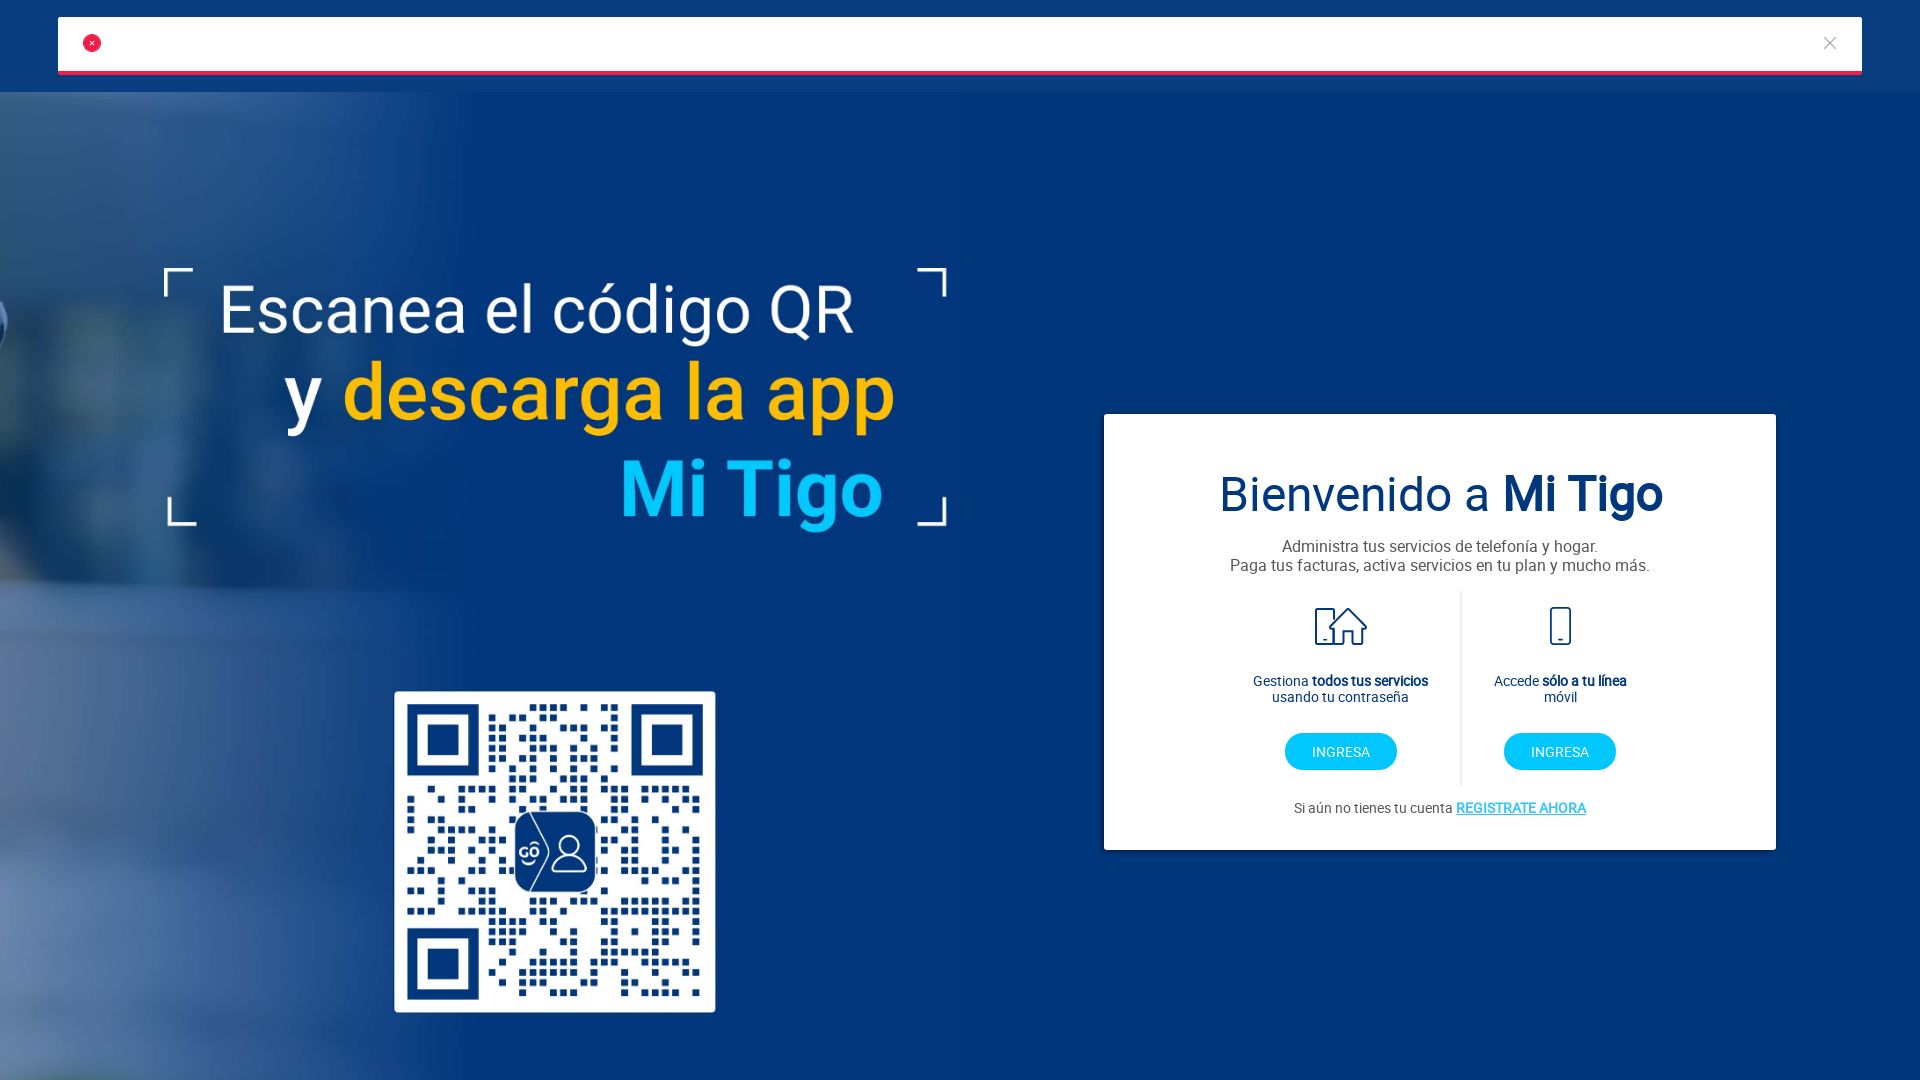 Status do site mi.tigo.com.co está   ONLINE